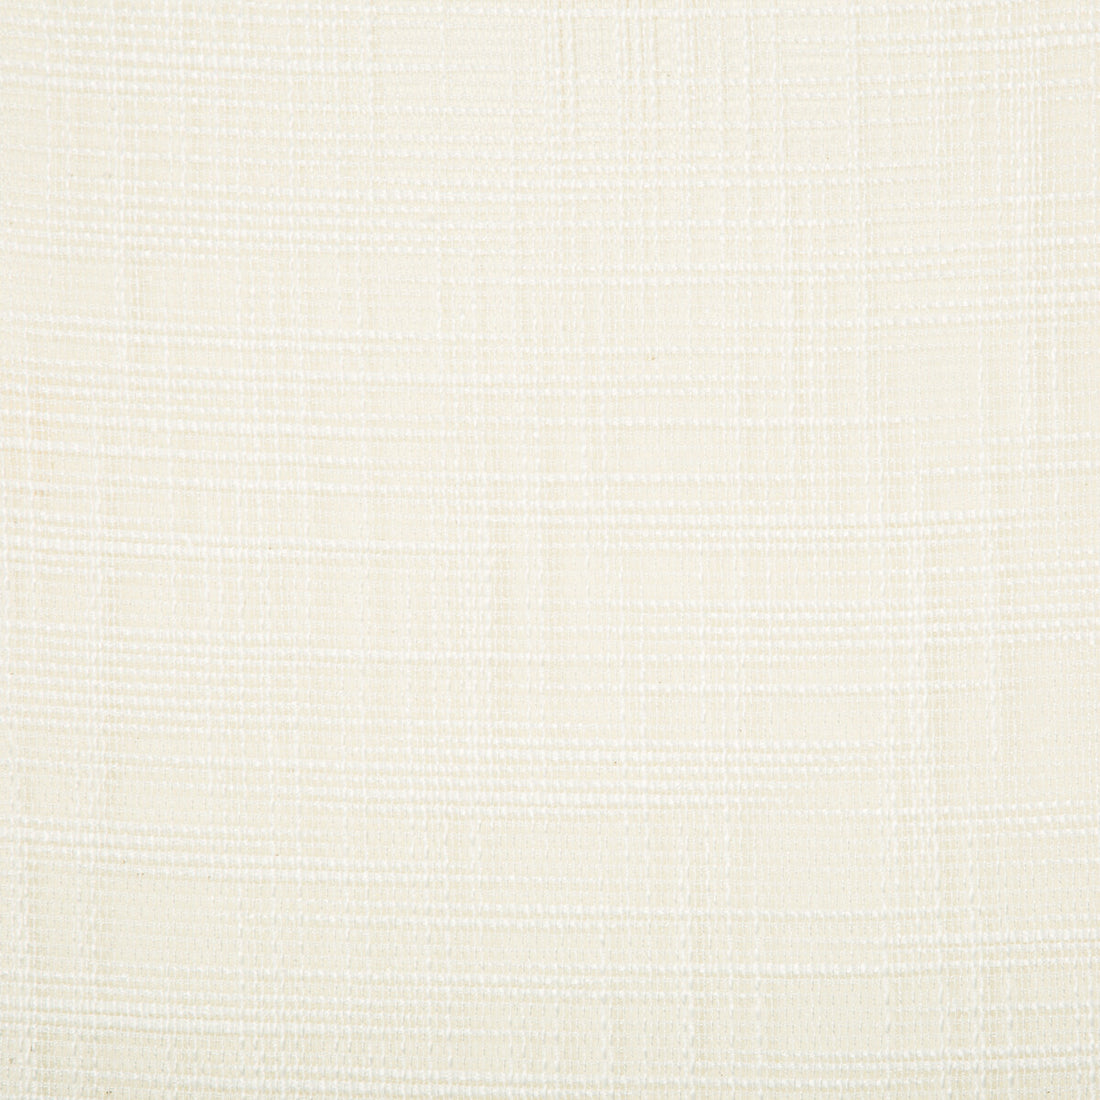 Kravet Basics fabric in 4670-101 color - pattern 4670.101.0 - by Kravet Basics